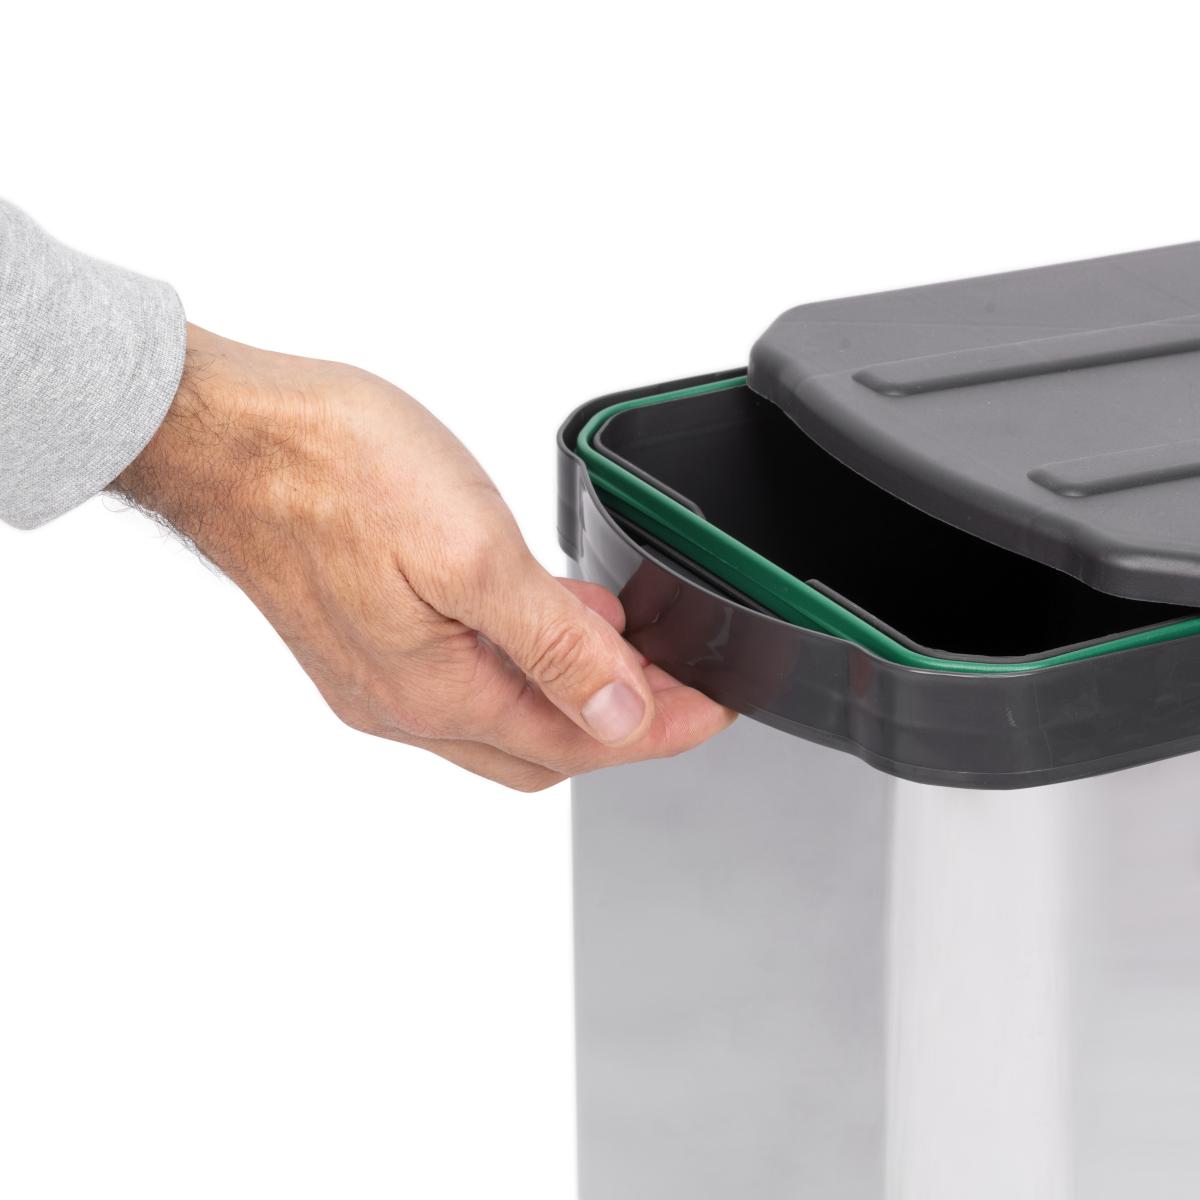 Cubos de basura y reciclaje con guias deslizantes para cocina 